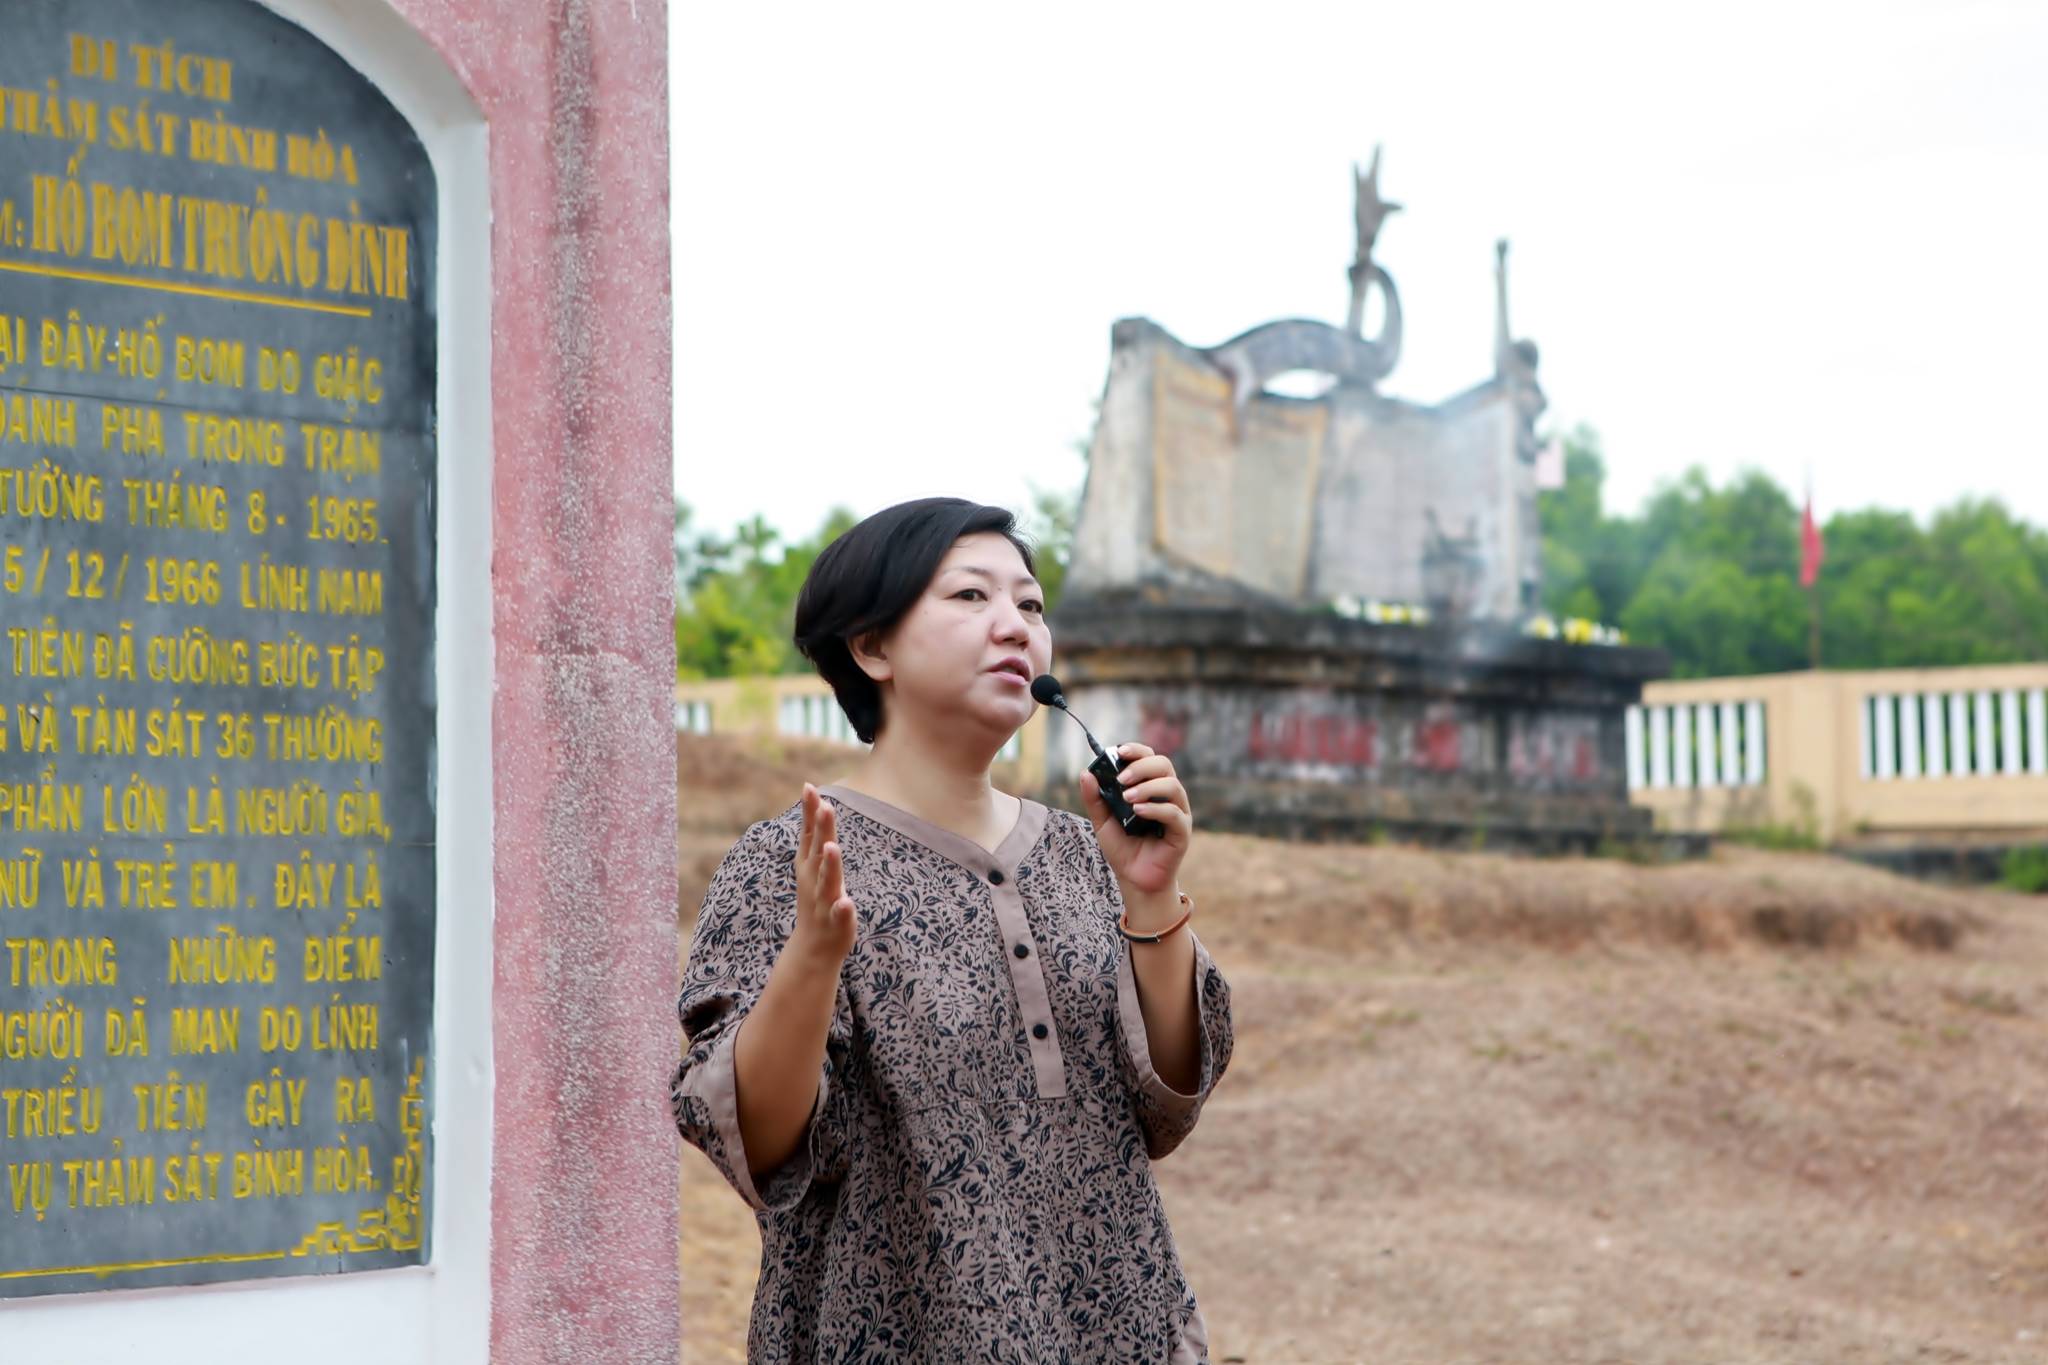 구수정 한베평화재단 상임이사가 베트남 중부 꽝응아이성 빈호아 마을에 서 있는 한국군 증오비 앞에서 1966년 일어난 한국군의 민간인 학살에 대해 설명하고 있다. [한베평화재단 제공]